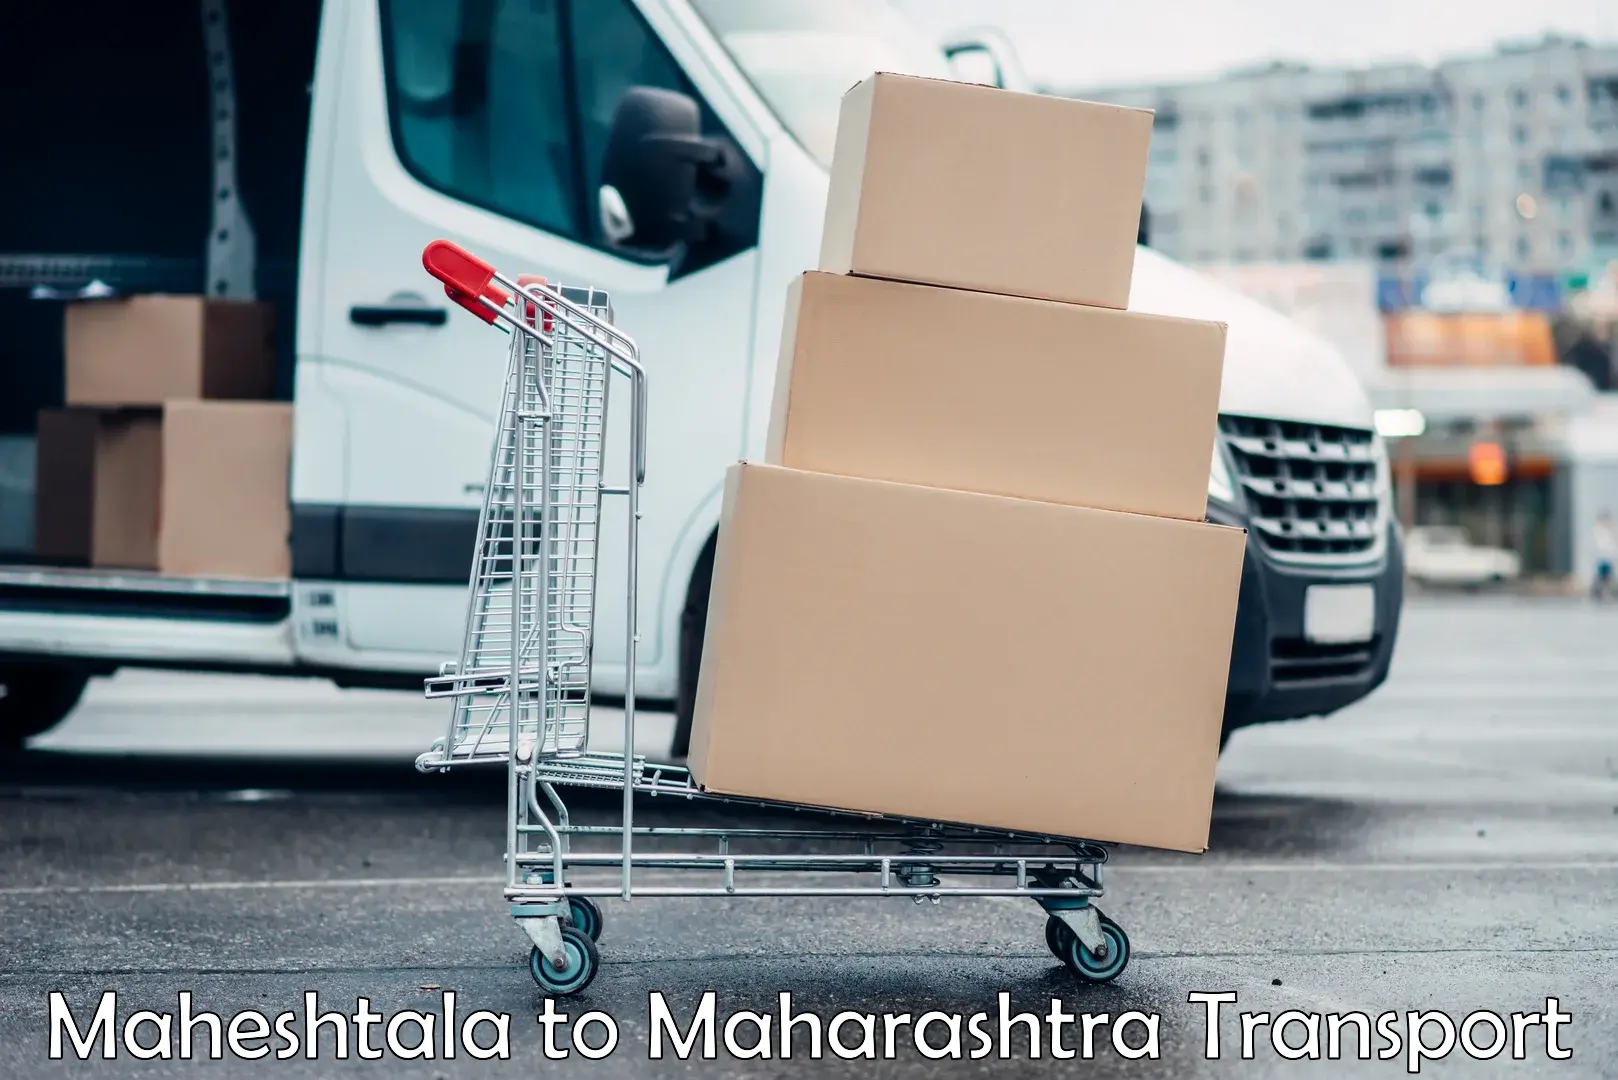 Pick up transport service Maheshtala to Yeola